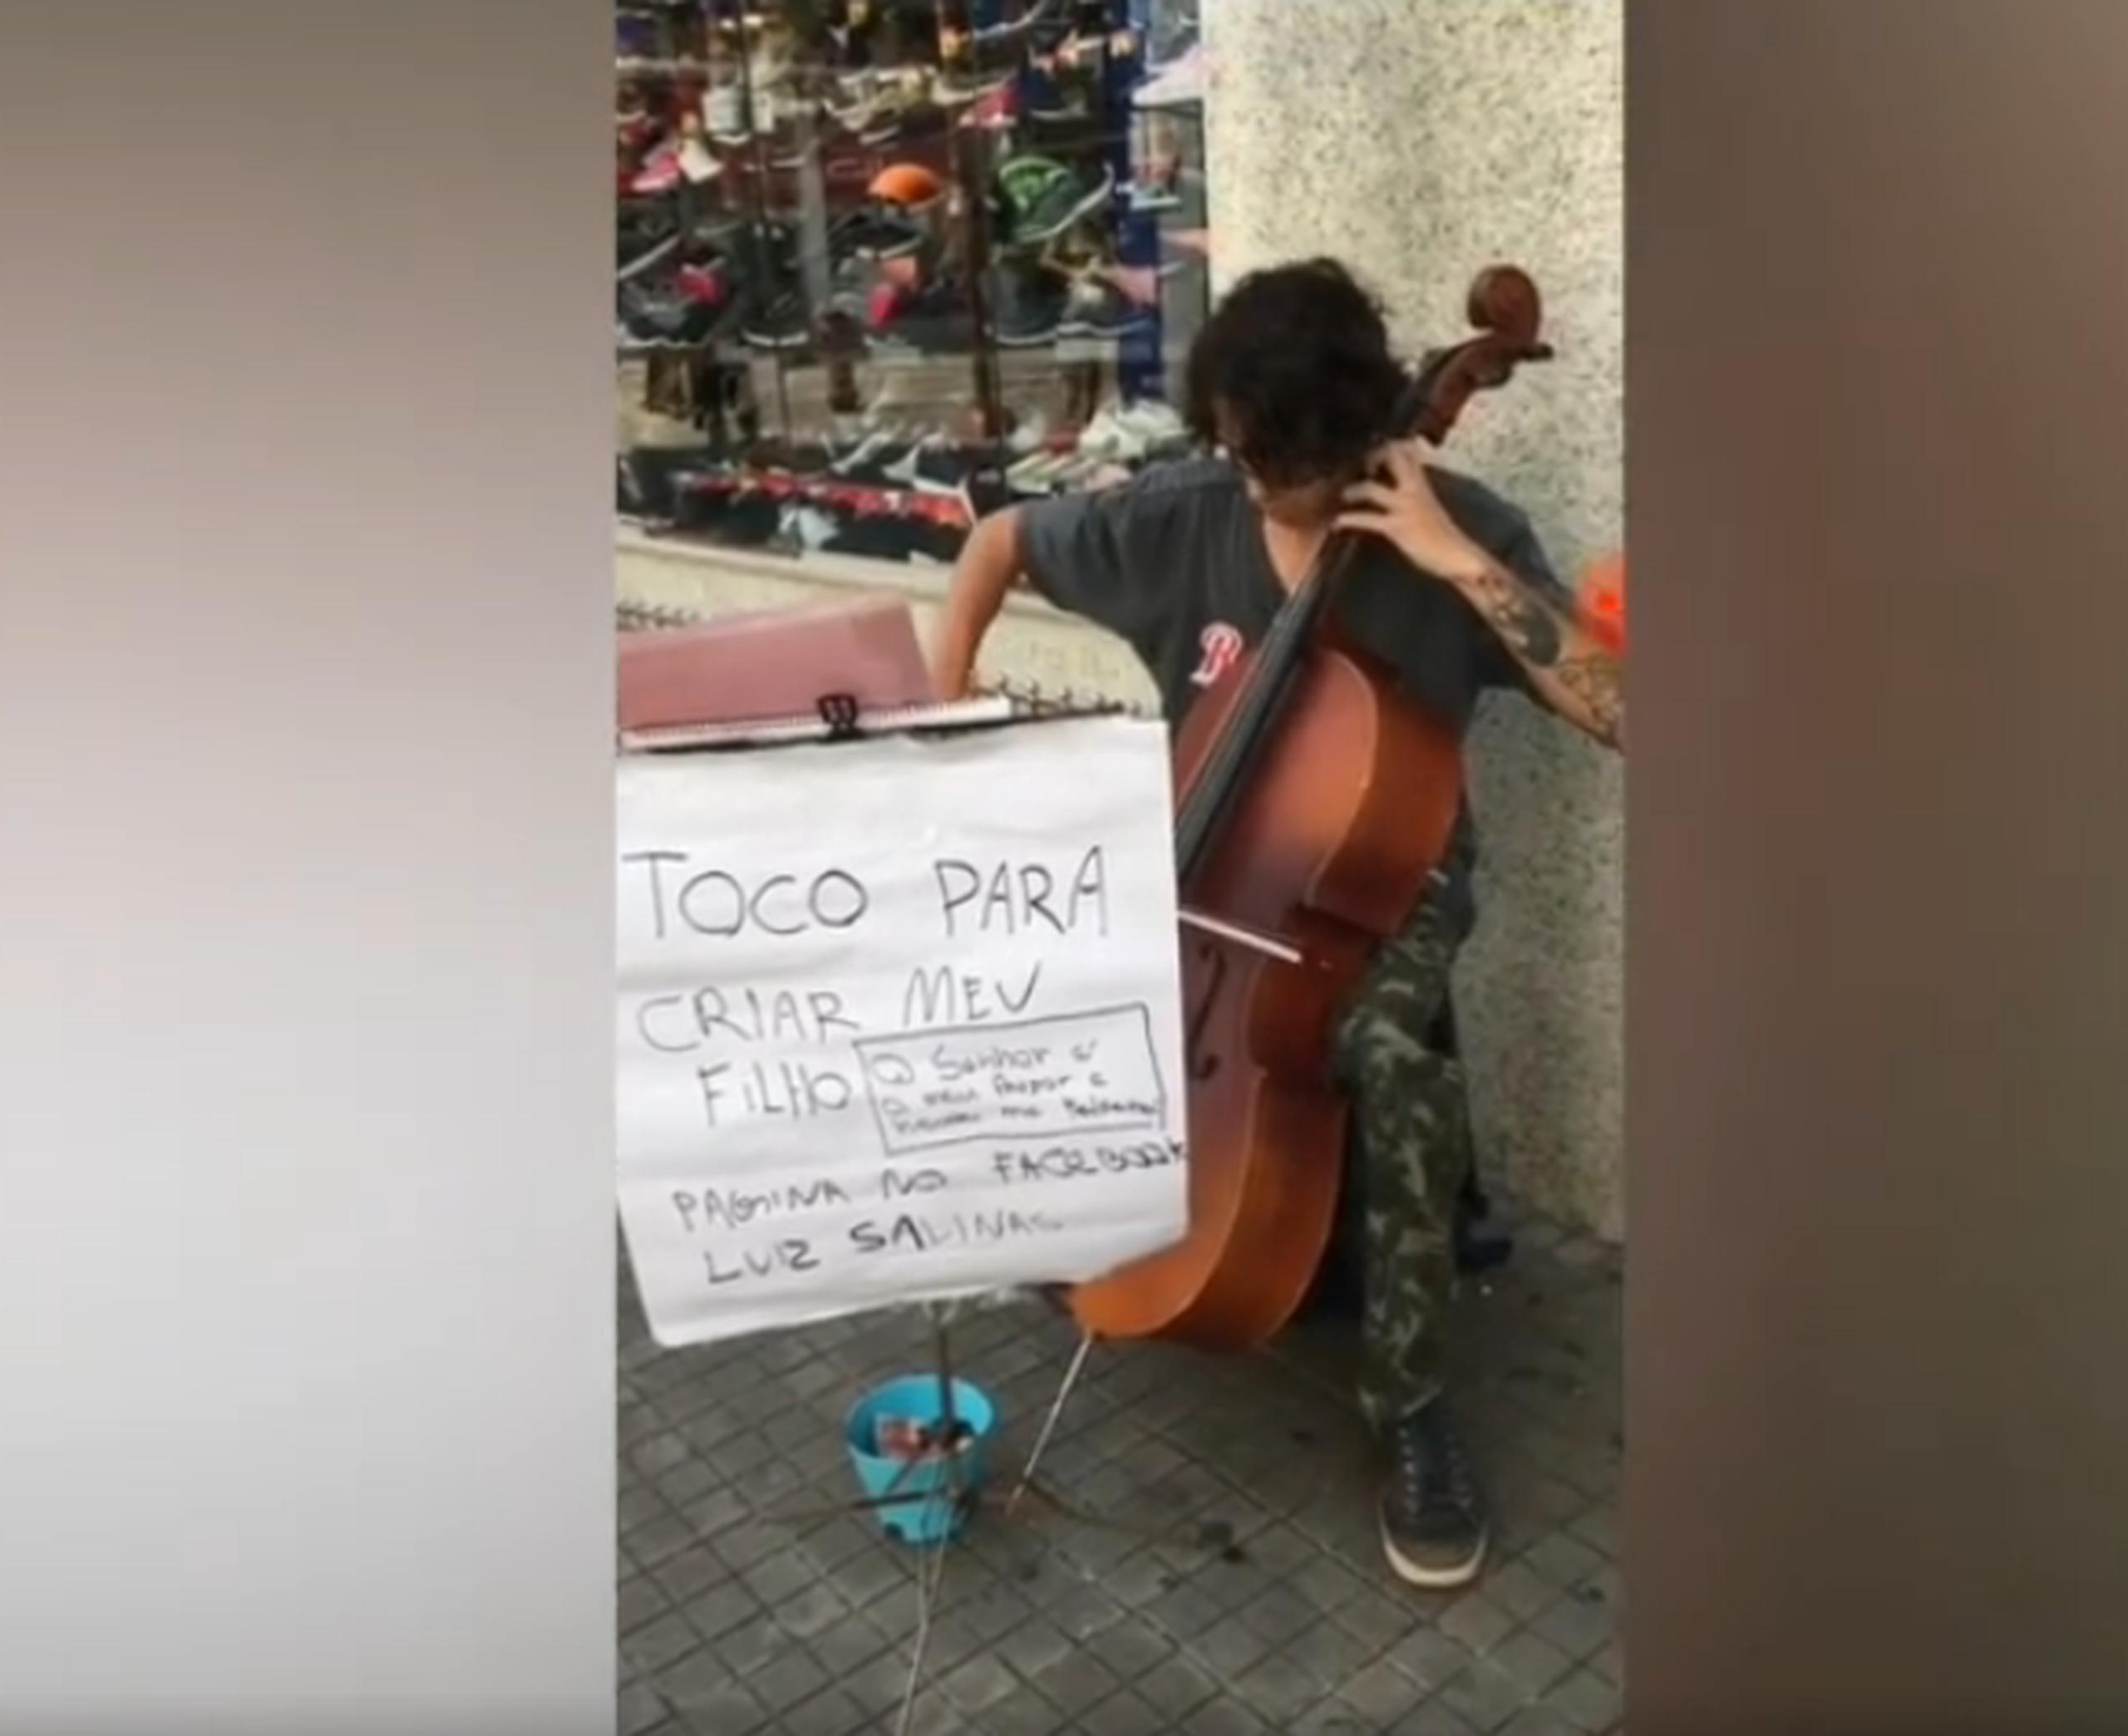 Un día, mientras tocaba en una calle de Santos, Luiz recibió un huevazo que terminó impactando en su violonchelo.